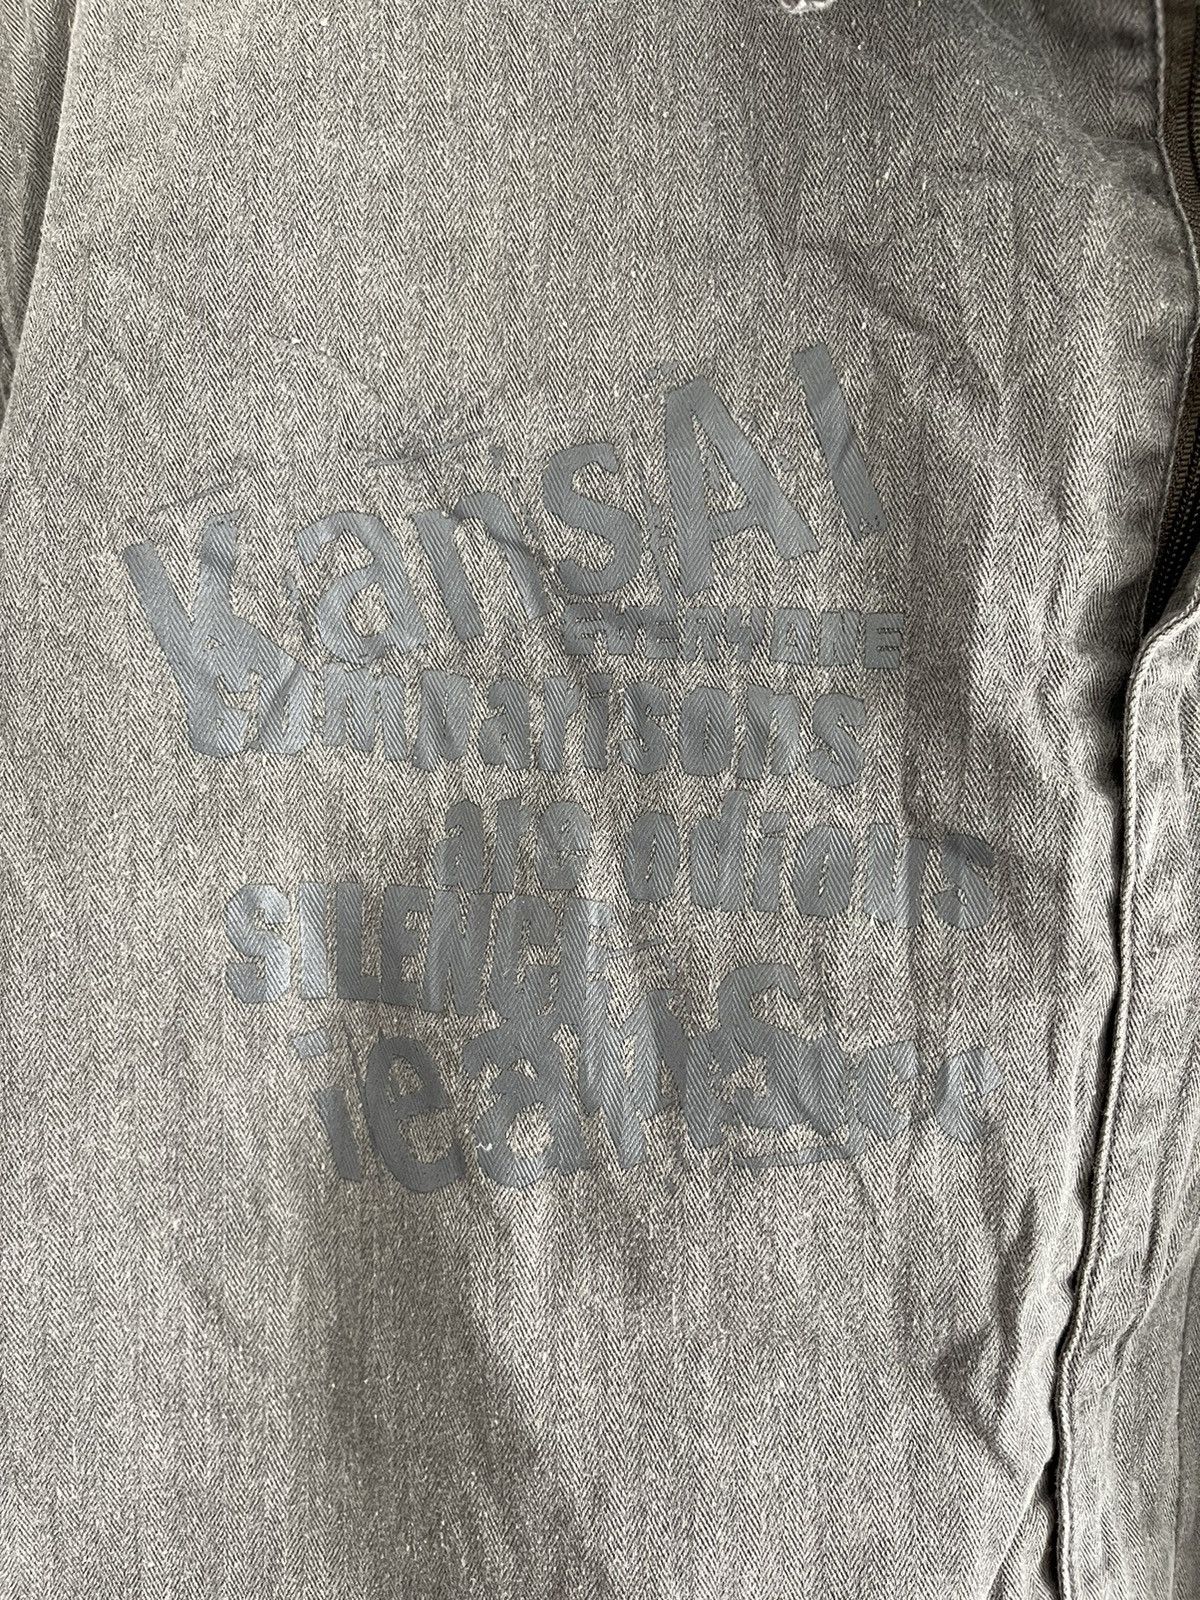 Japanese Brand - Vintage Kansai Jeans Zip Up Denim Shirt - 7